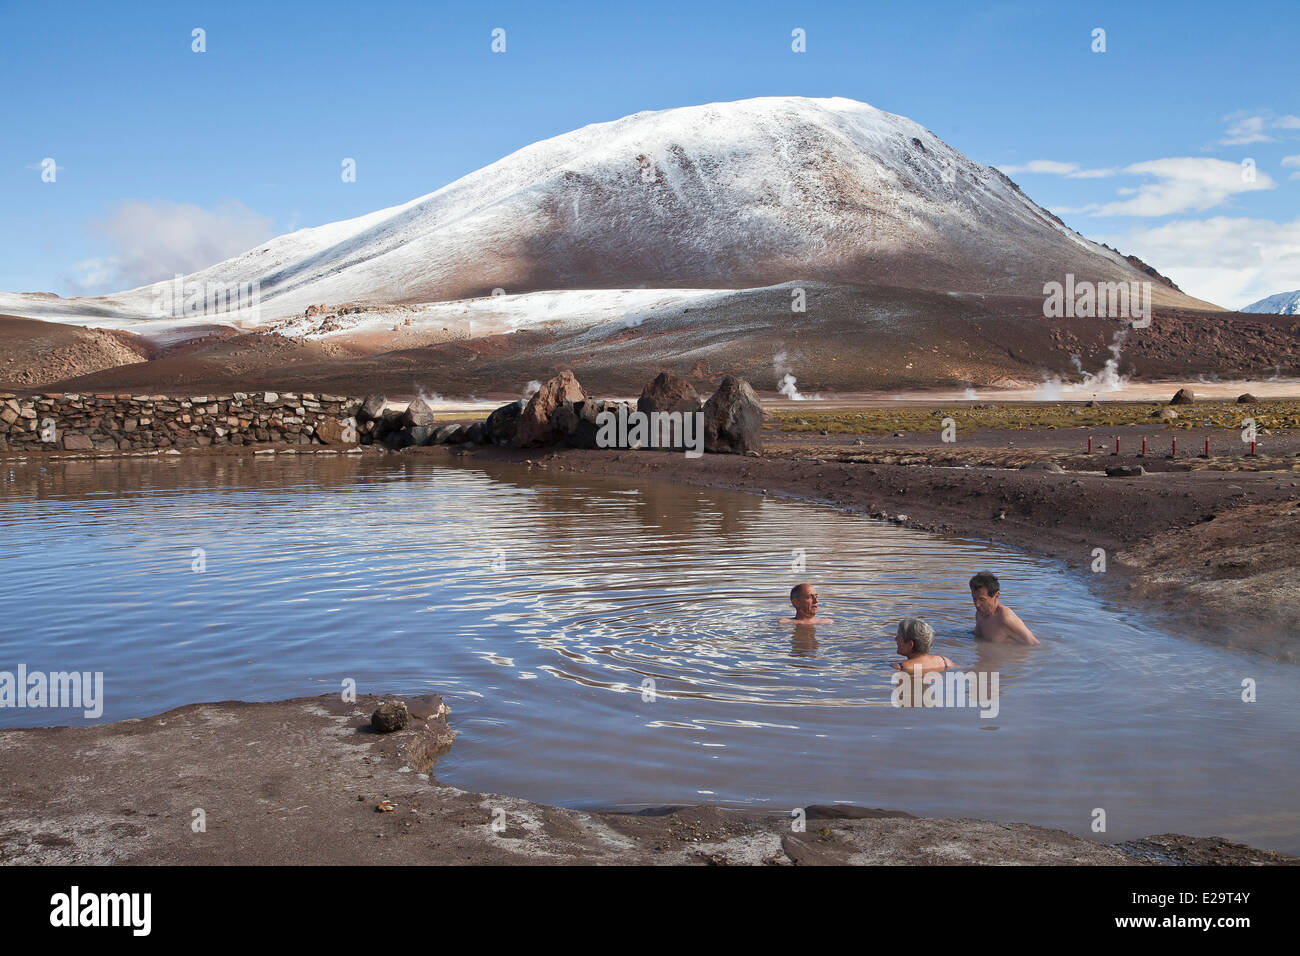 Chile, Antofagasta region, San Pedro de Atacama, El Tatio geothermal field, bath in a hot water source Stock Photo